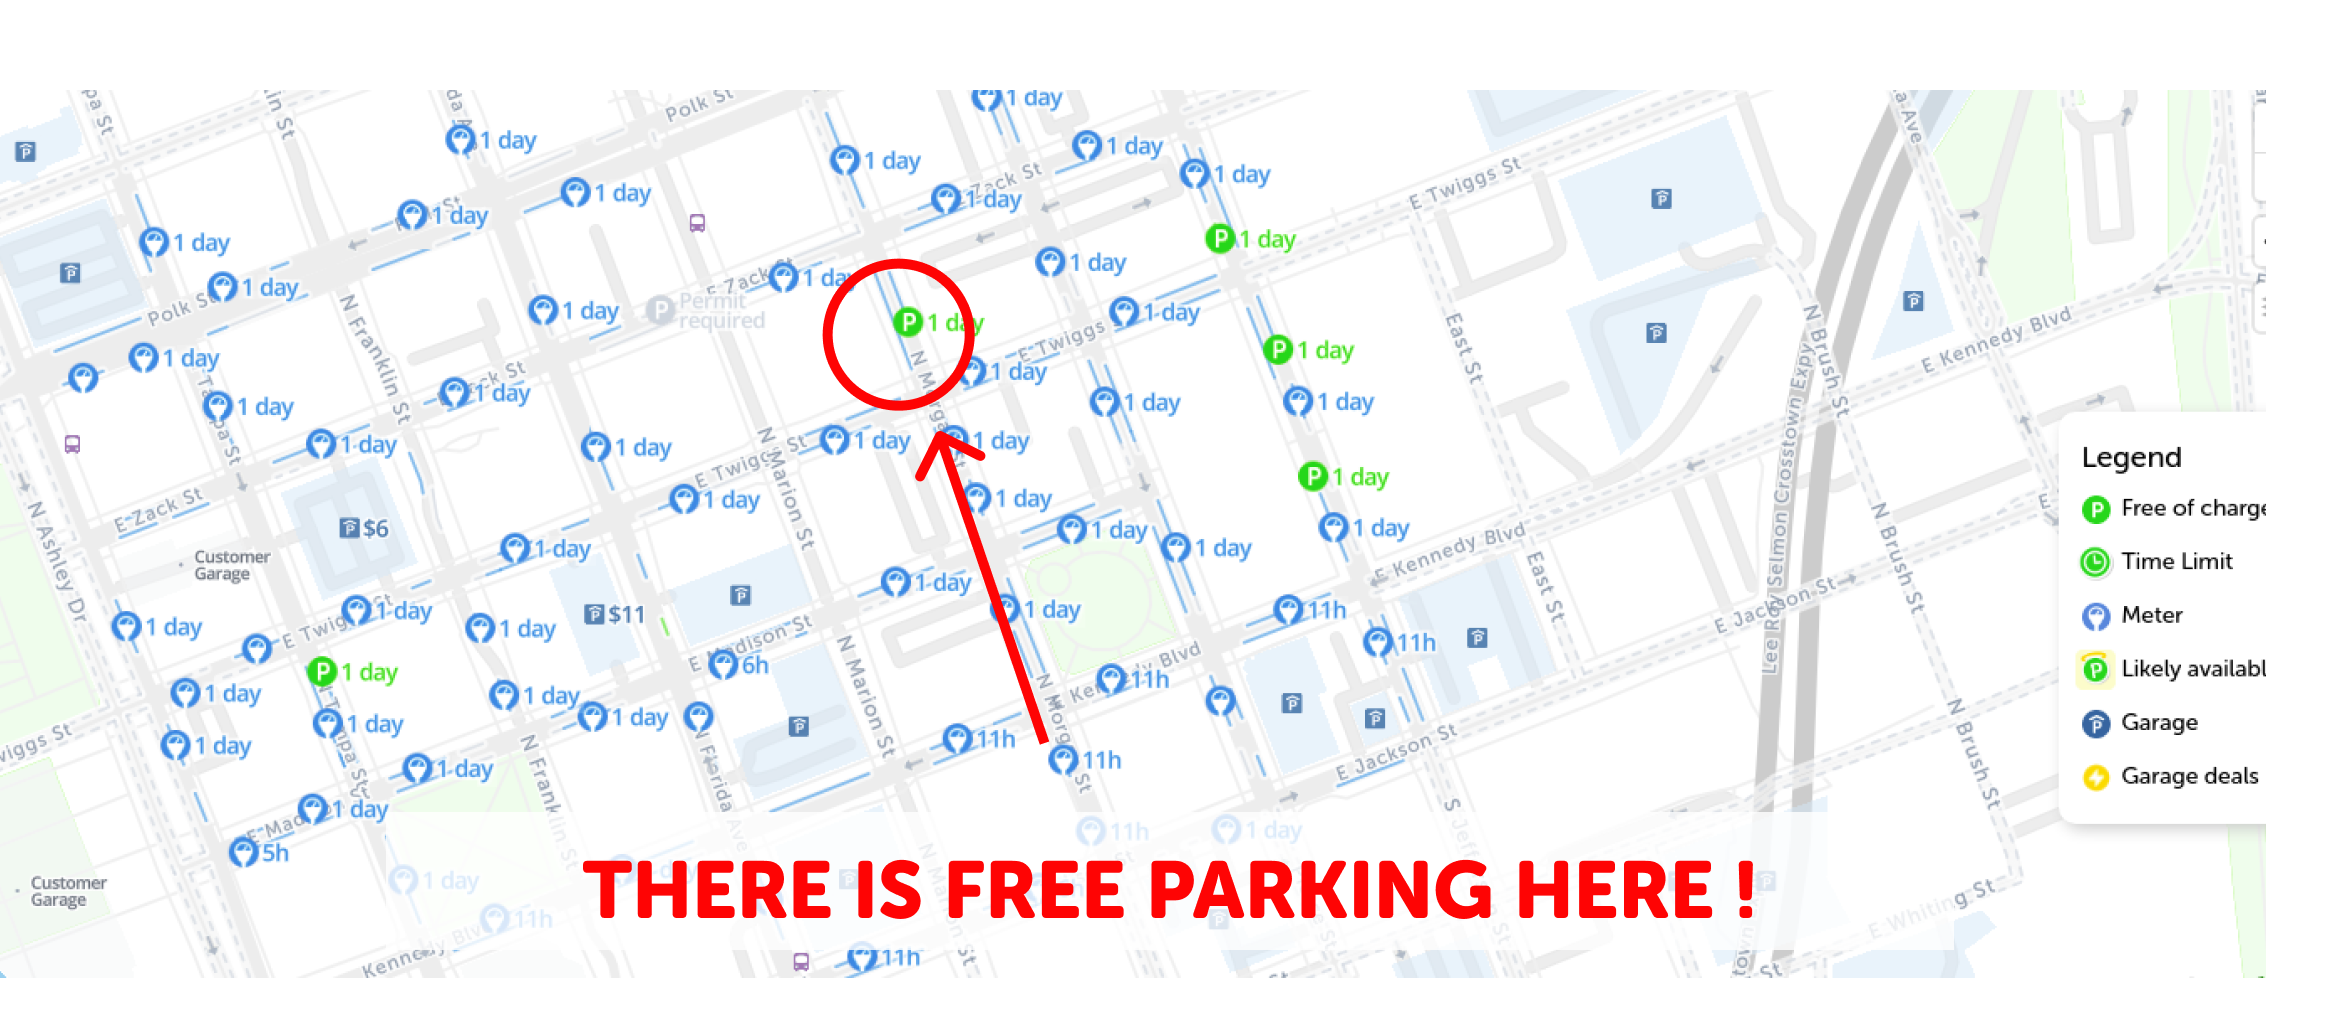 map of free parking in Tampa - SpotAngels